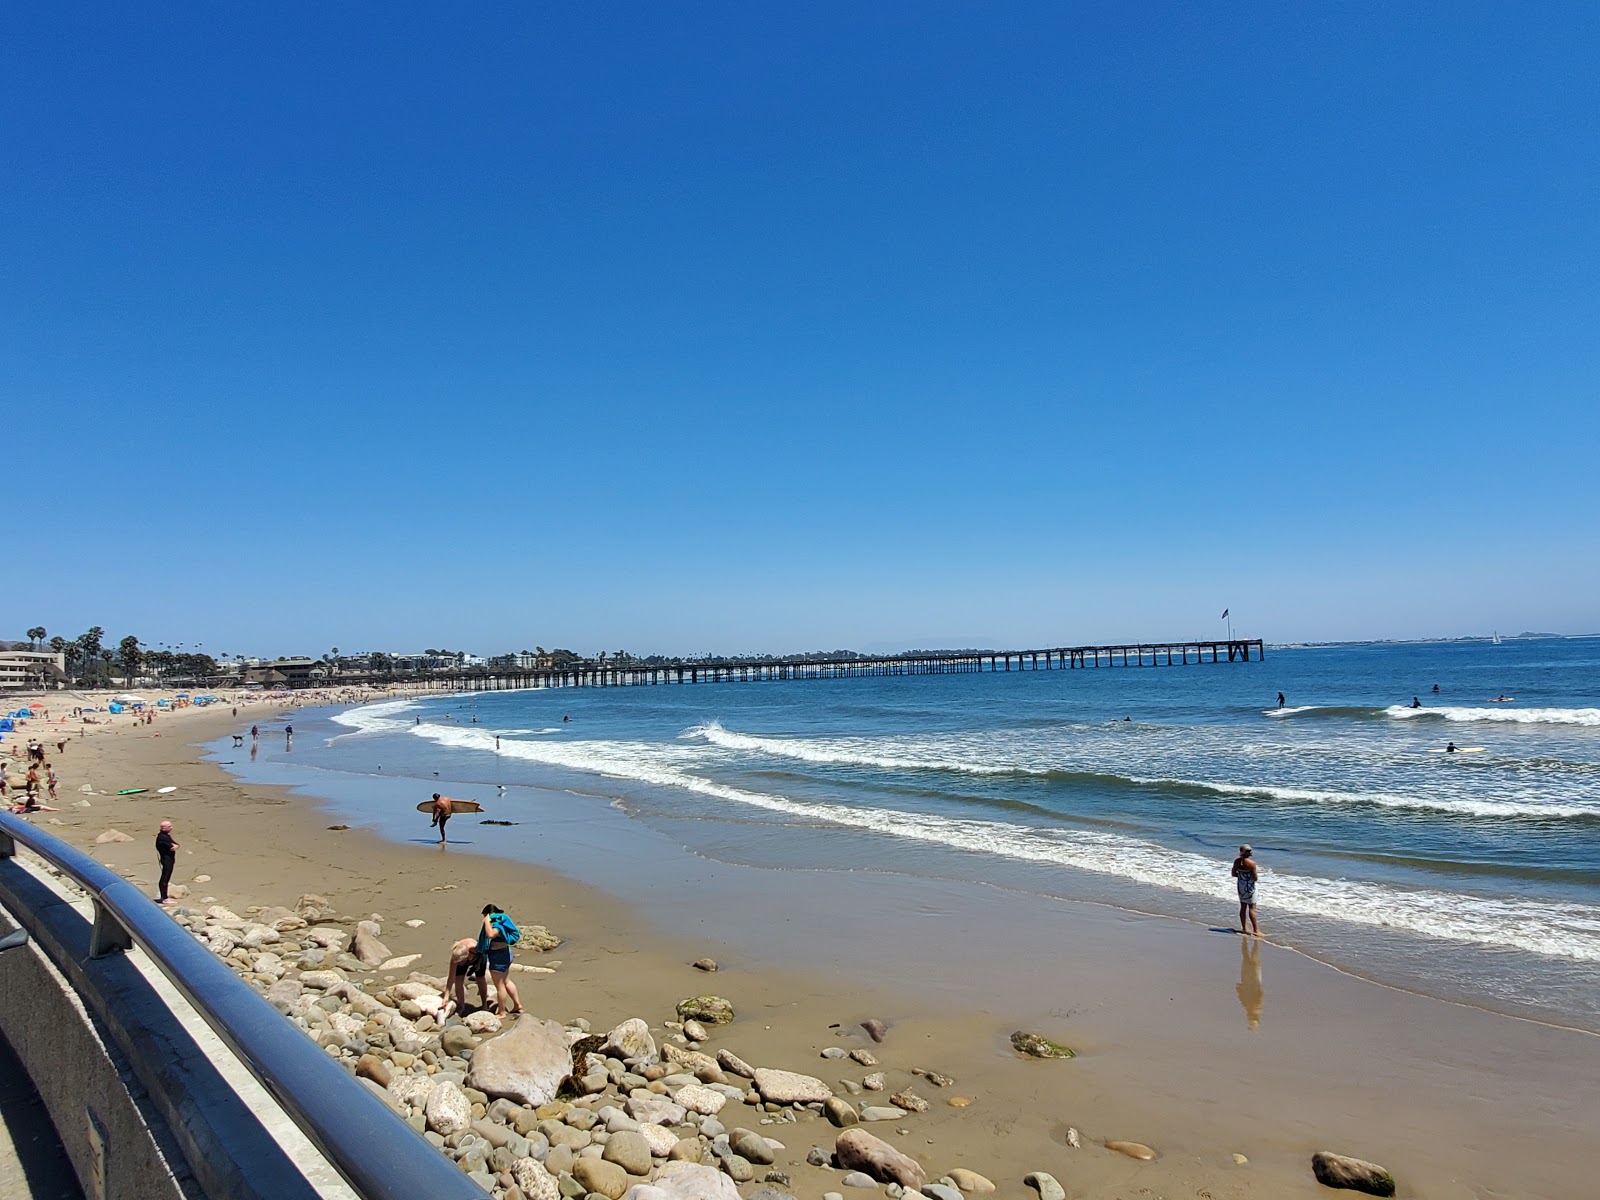 Ventura Beach'in fotoğrafı parlak kum yüzey ile